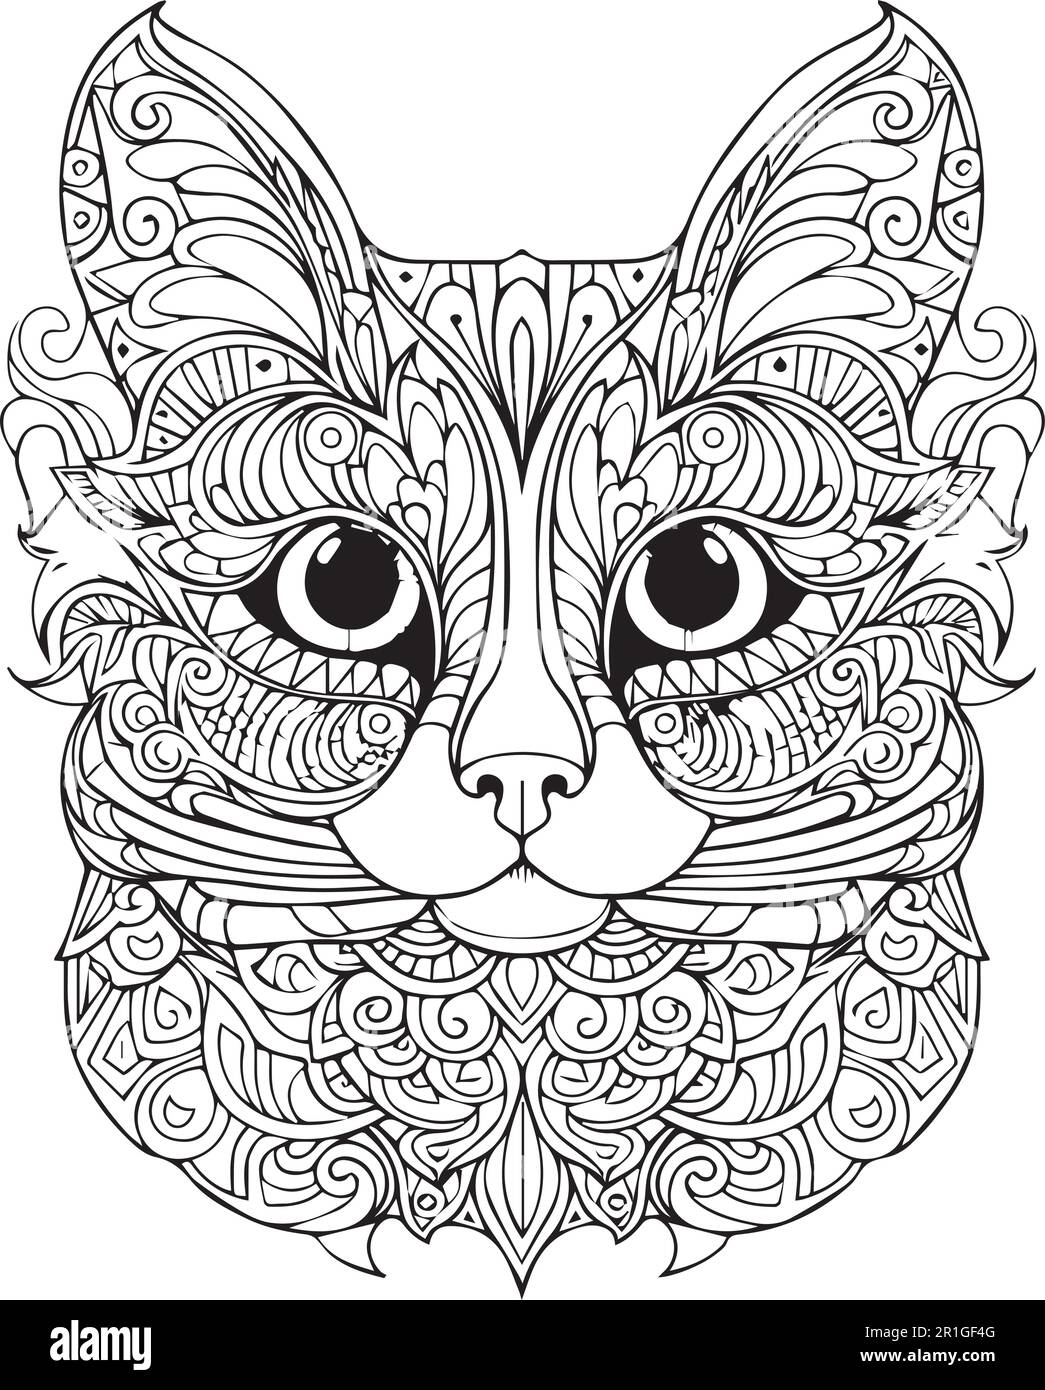 Un dessin noir et blanc d'une page de livre de coloriage pour le visage d'un chat. Illustration de Vecteur